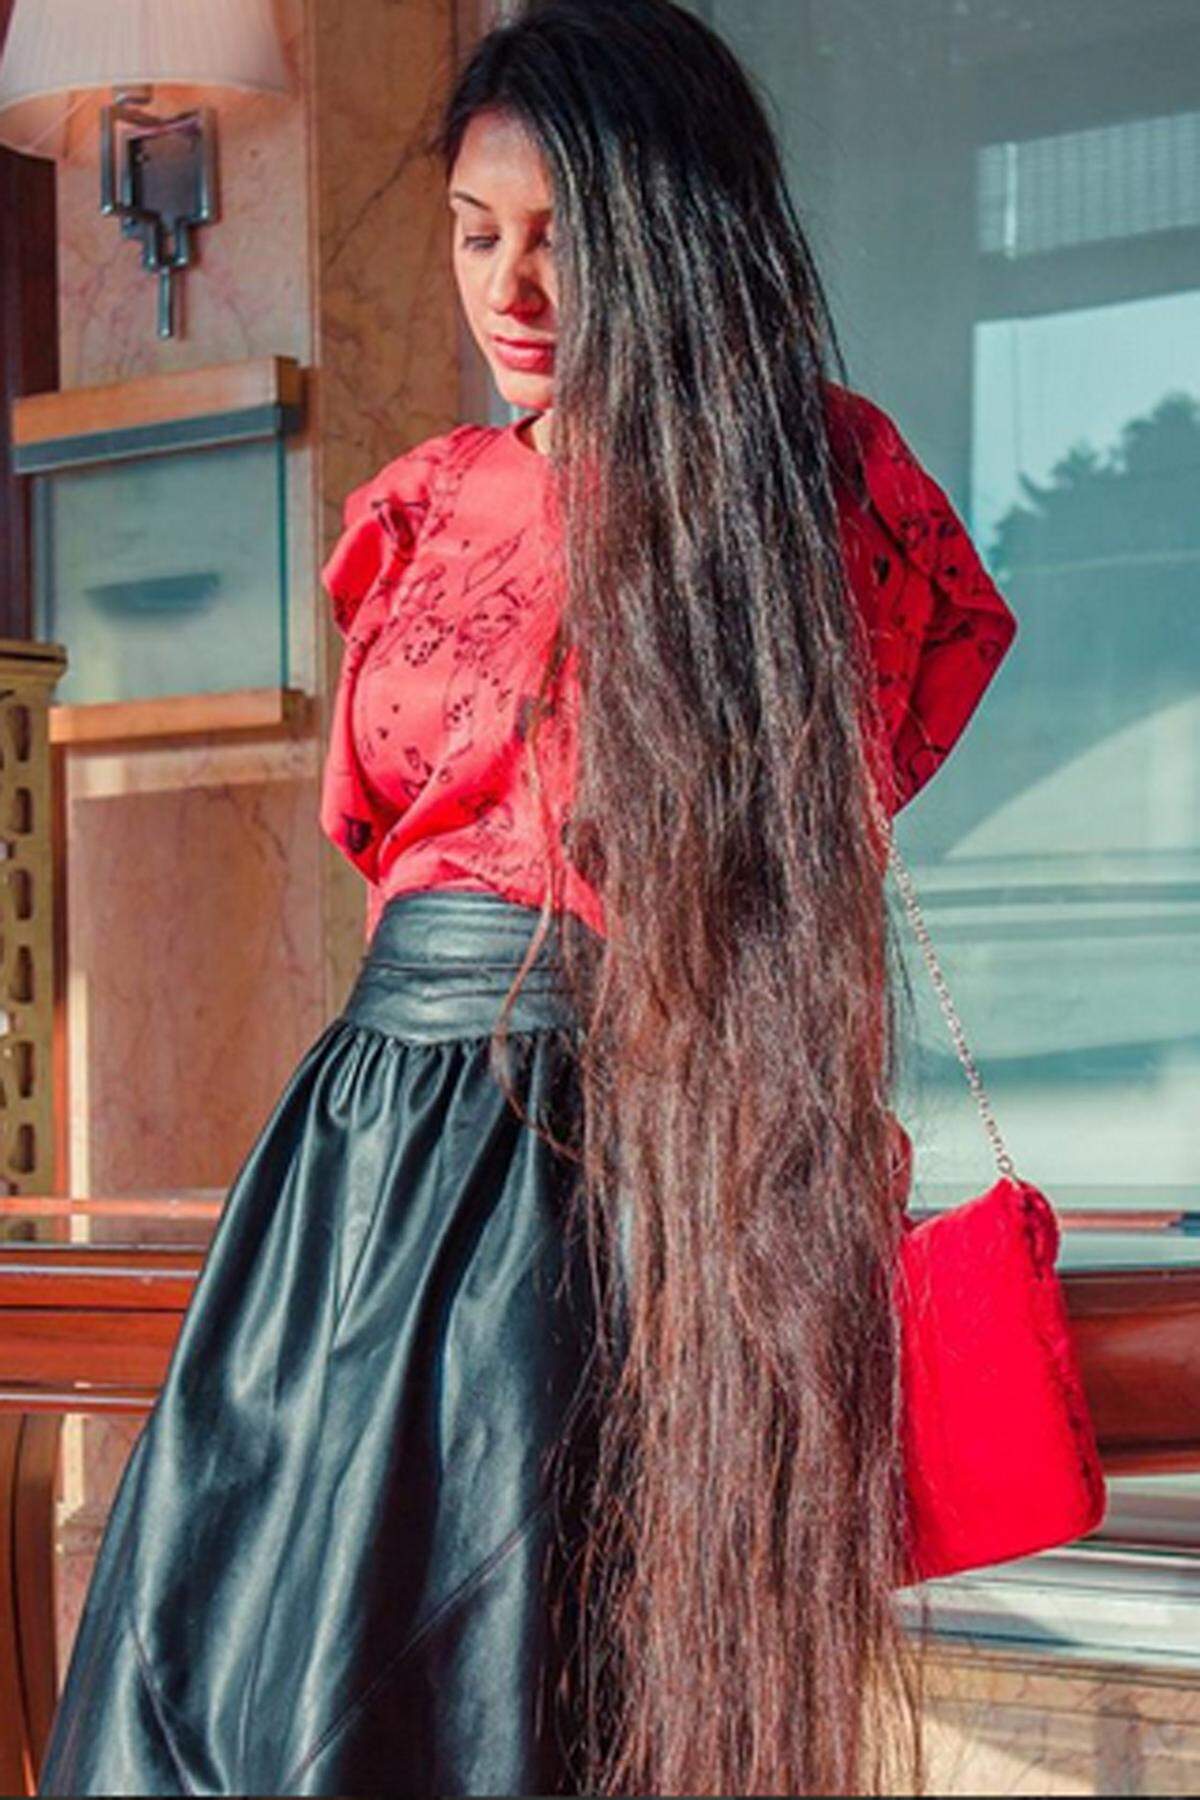 Die amerikanische Reise- und Mode-Bloggerin Pallavi alias That Desi Girl nennt sich auf ihrem Instagram-Account selbst "die indische Rapunzel". Knapp 100.000 Fans folgen ihr.